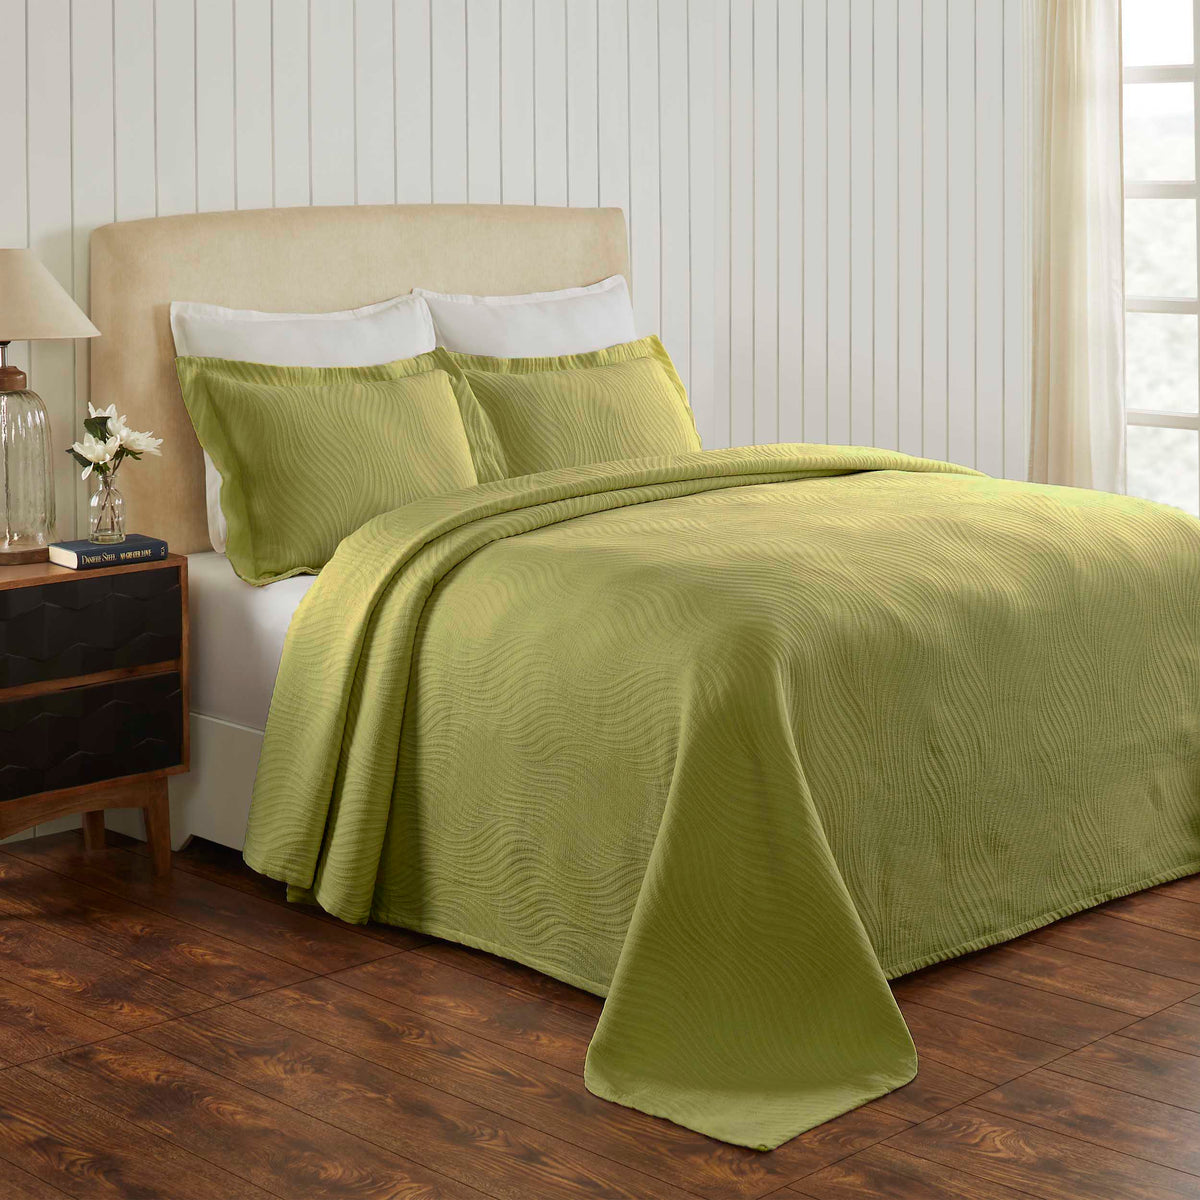 Cascade Cotton Jacquard Matelasse 3-Piece Bedspread Set - Pear